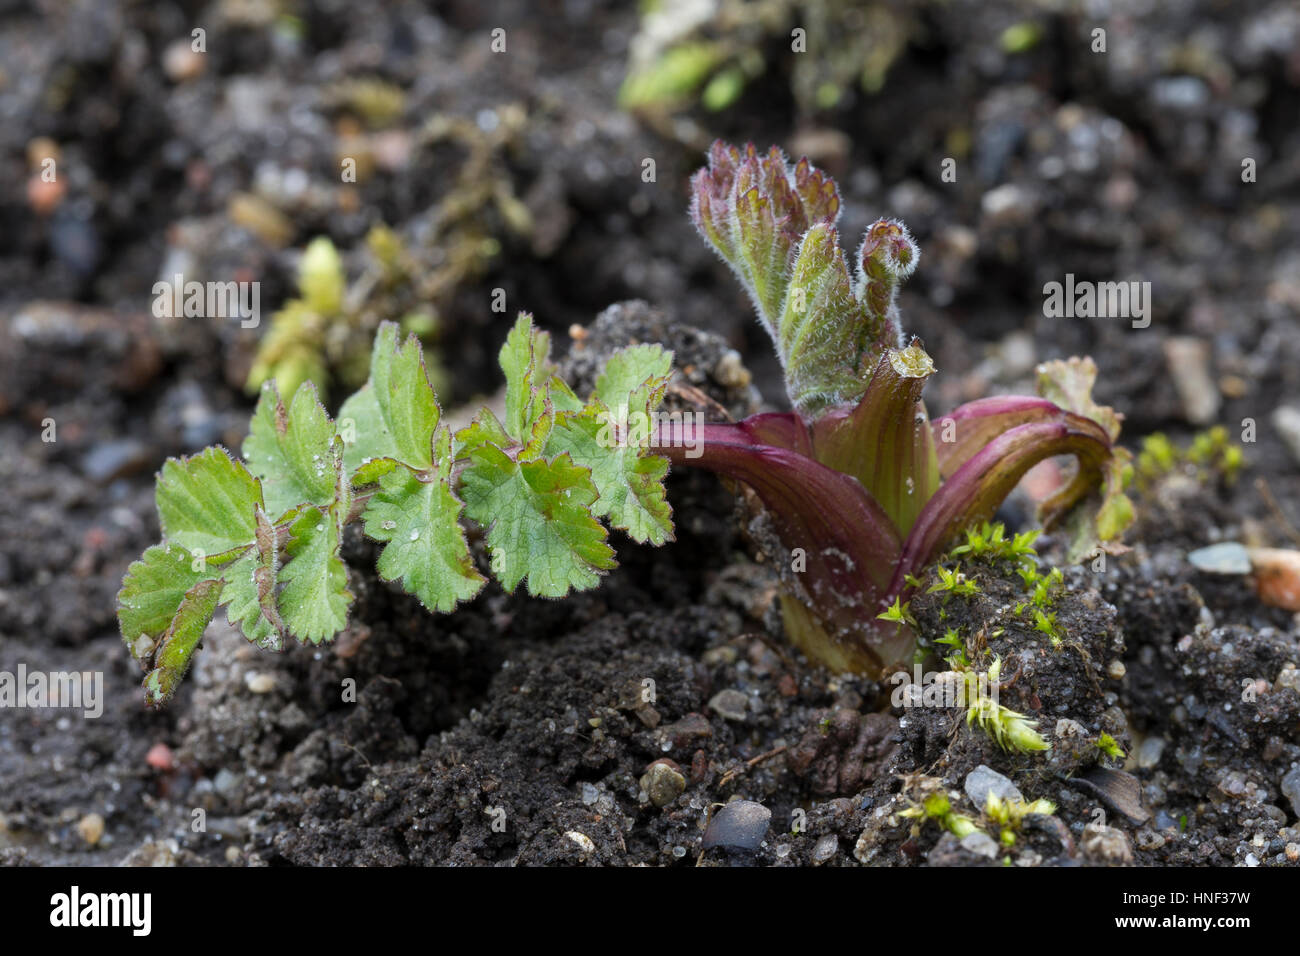 Echter Pastinak, Blatt, Blätter vor der Blüte, Pastinake, Hammelsmöhre, Pastinaca sativa, parsnip Stock Photo